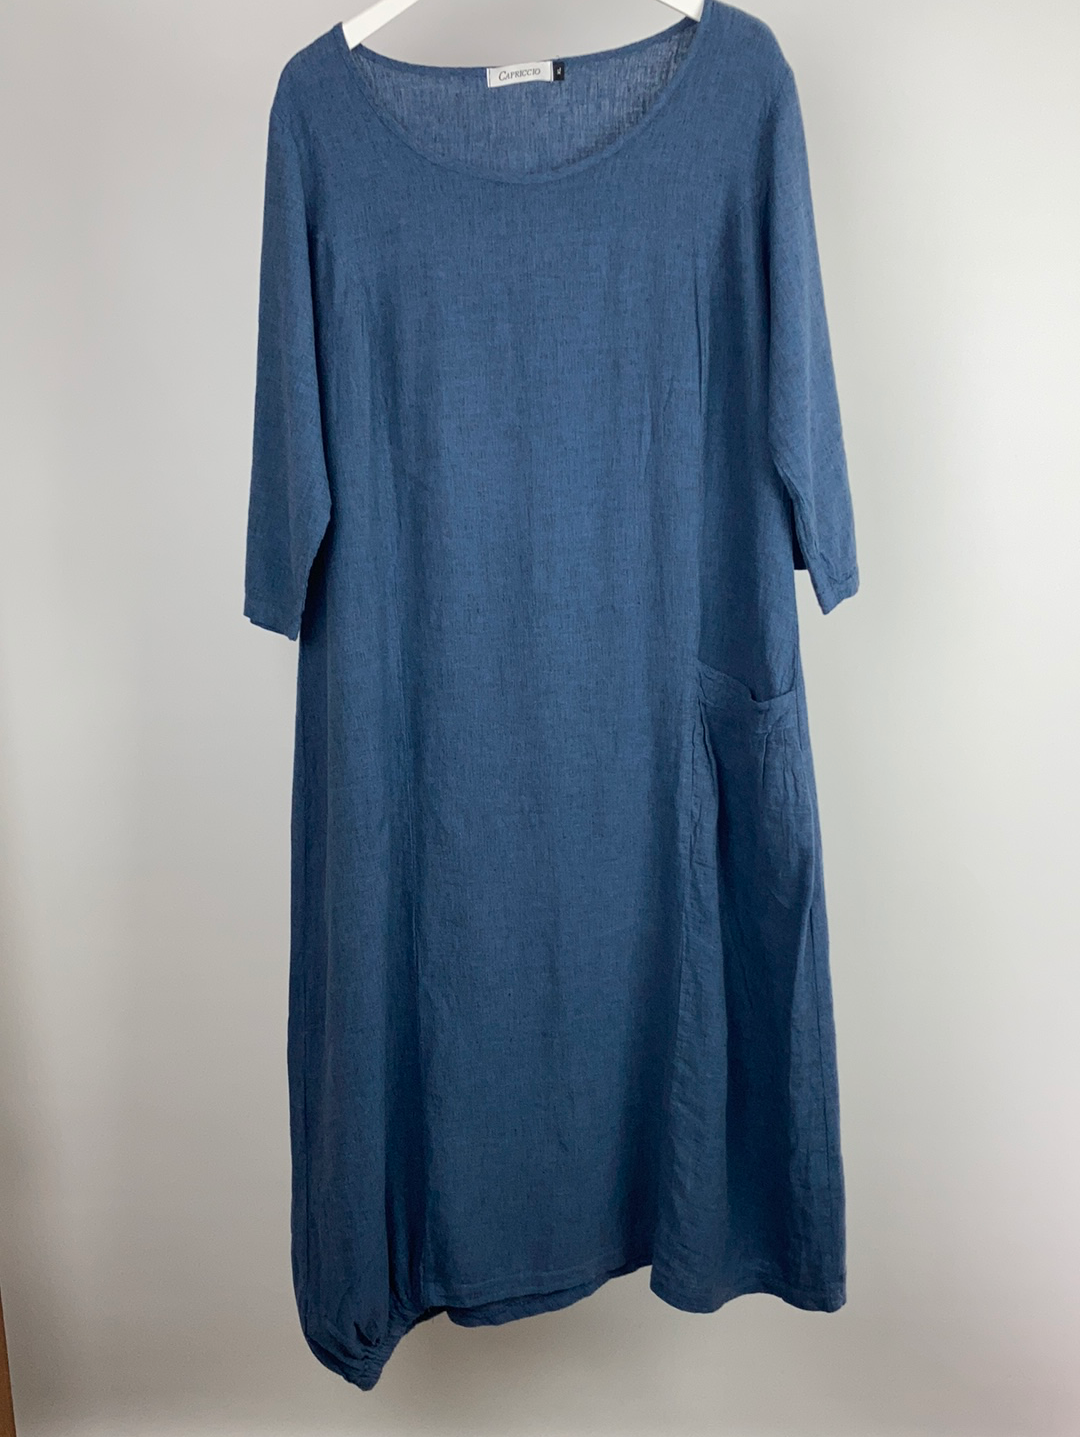 Capriccio linen /cotton dress size XL (uk 18/20)